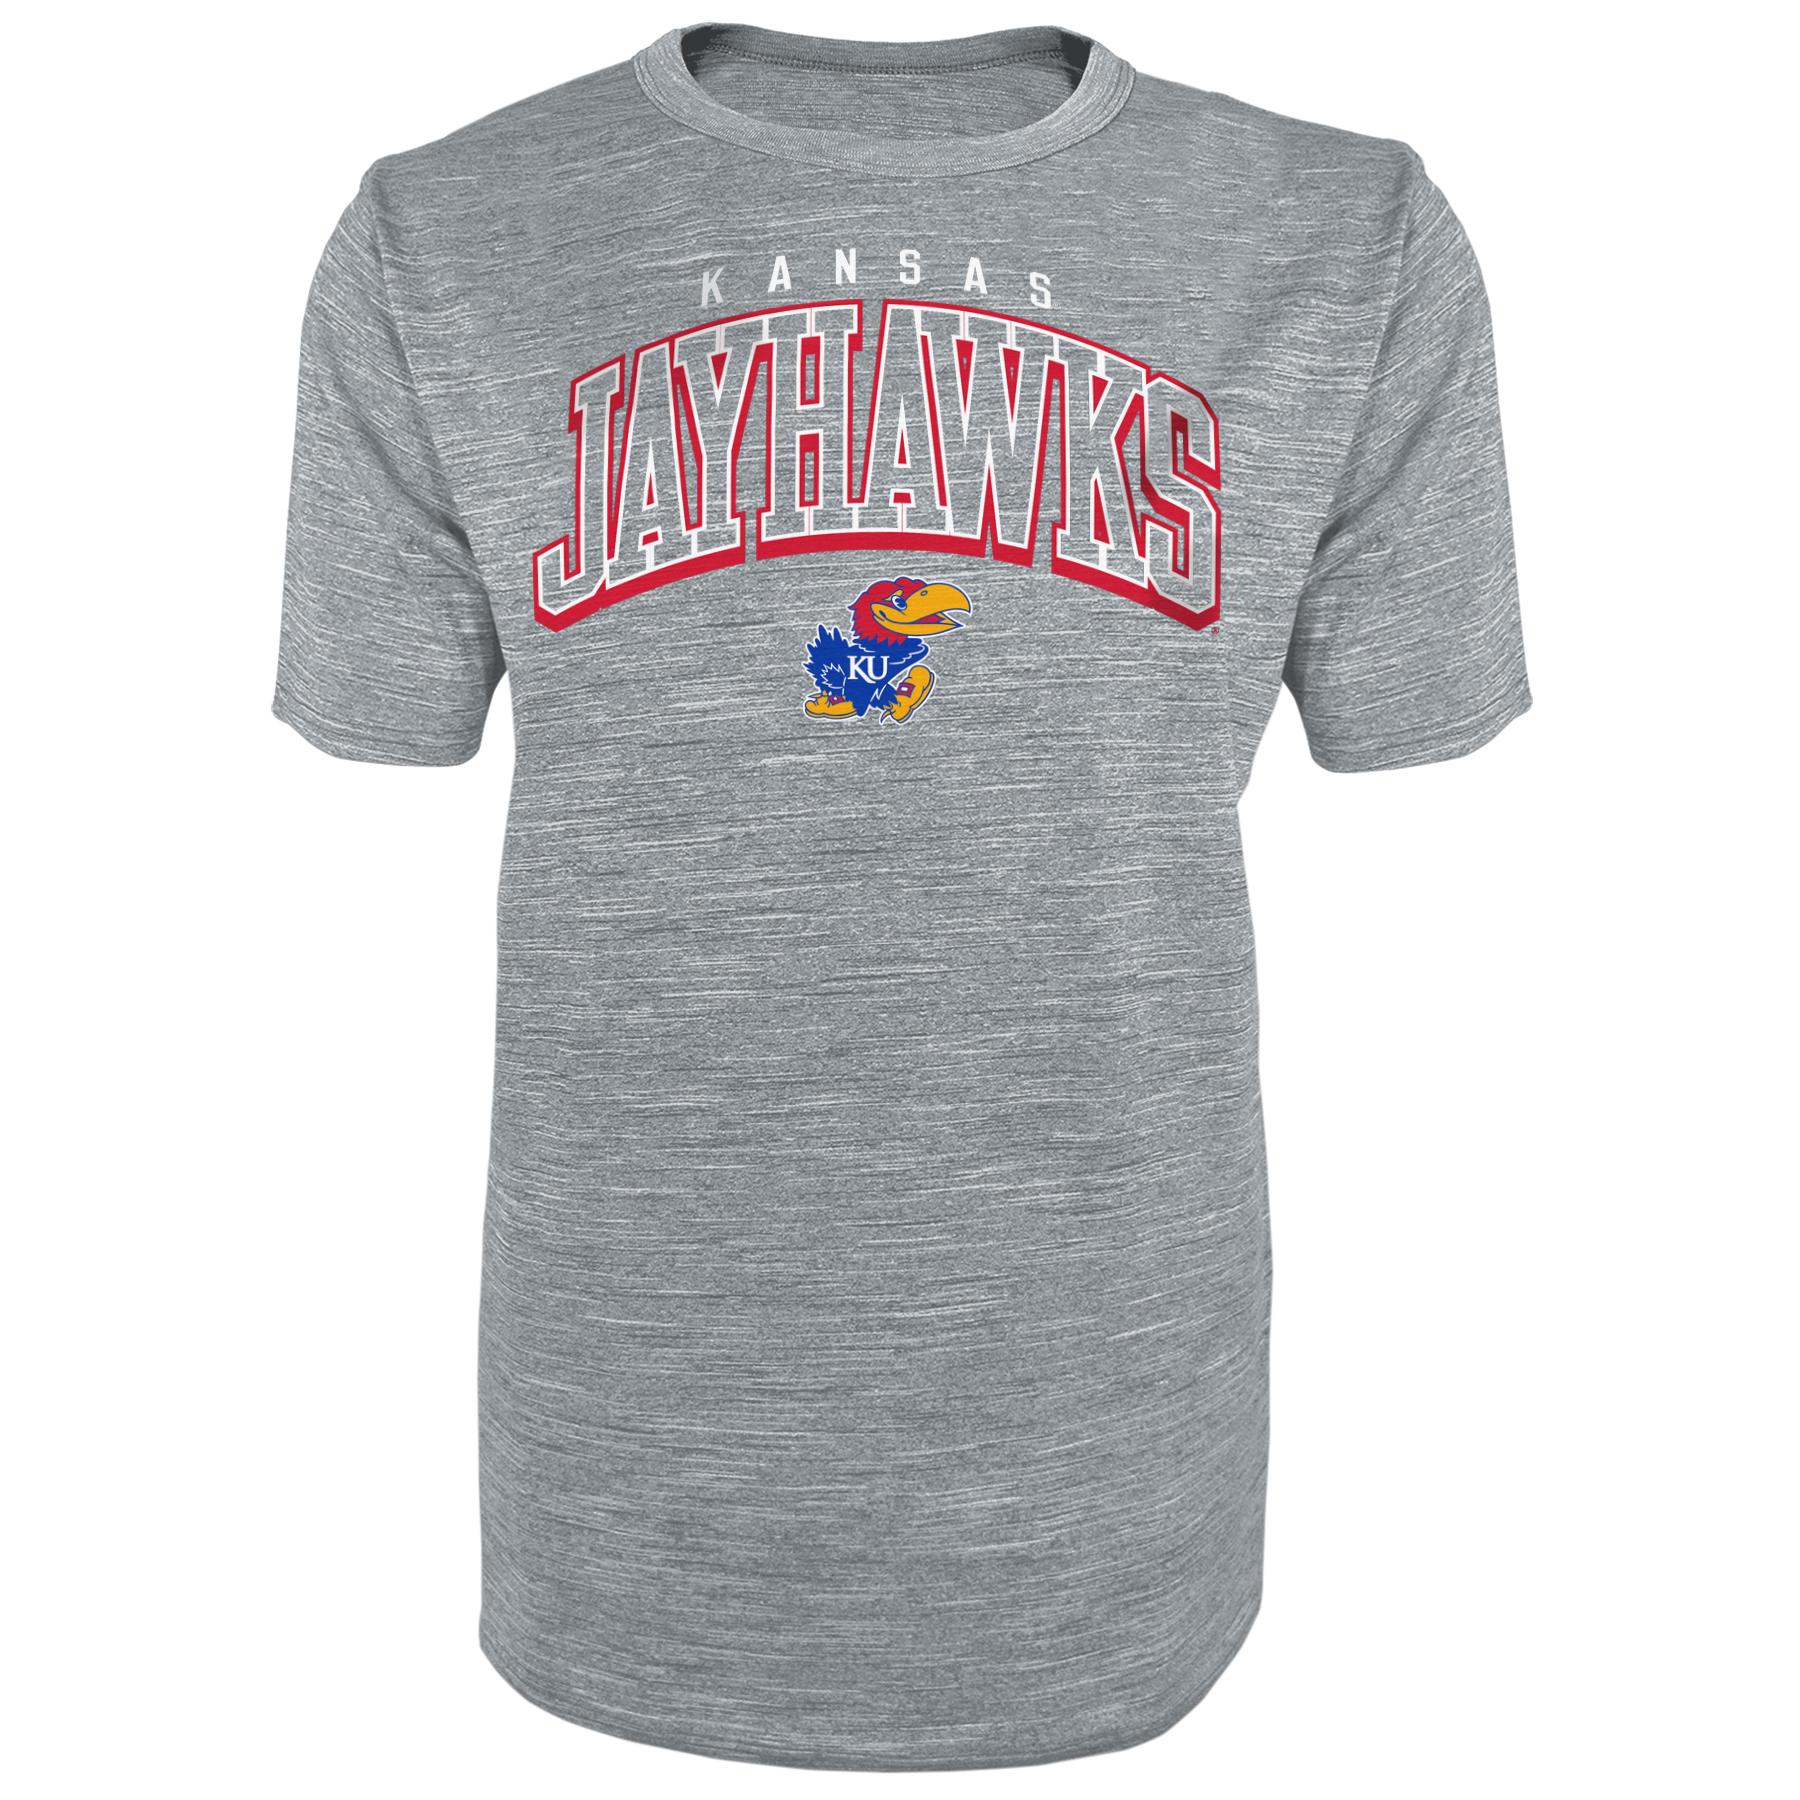 NCAA Men's Athletic T-Shirt - Kansas Jayhawks